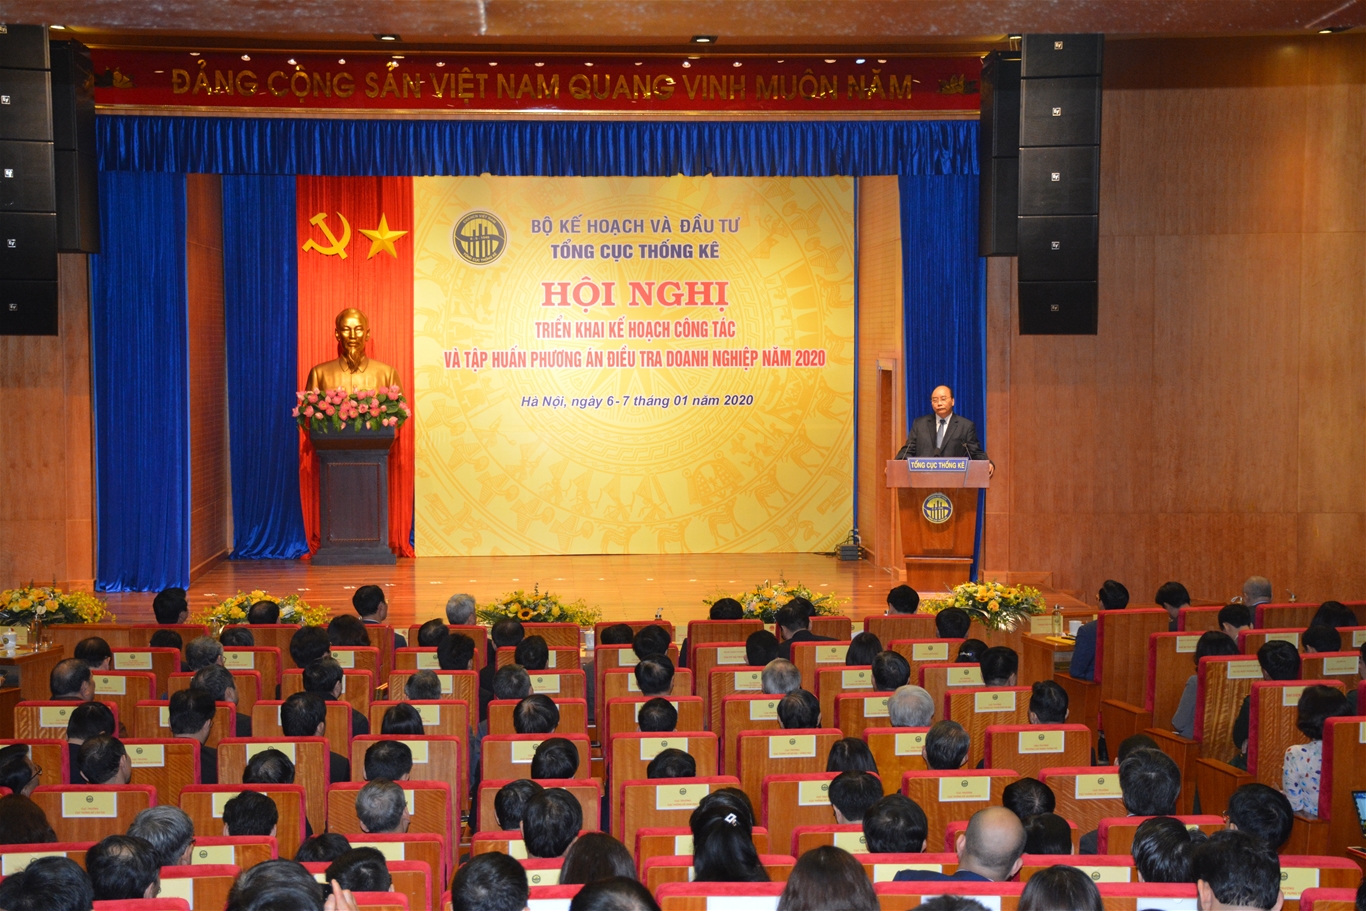 Thủ tướng Chính phủ Nguyễn Xuân Phúc tới dự và chỉ đạo tại Hội nghị triển khai kế hoạch công tác và tập huấn phương án Điều tra Doanh nghiệp năm 2020 của Tổng cục Thống kê